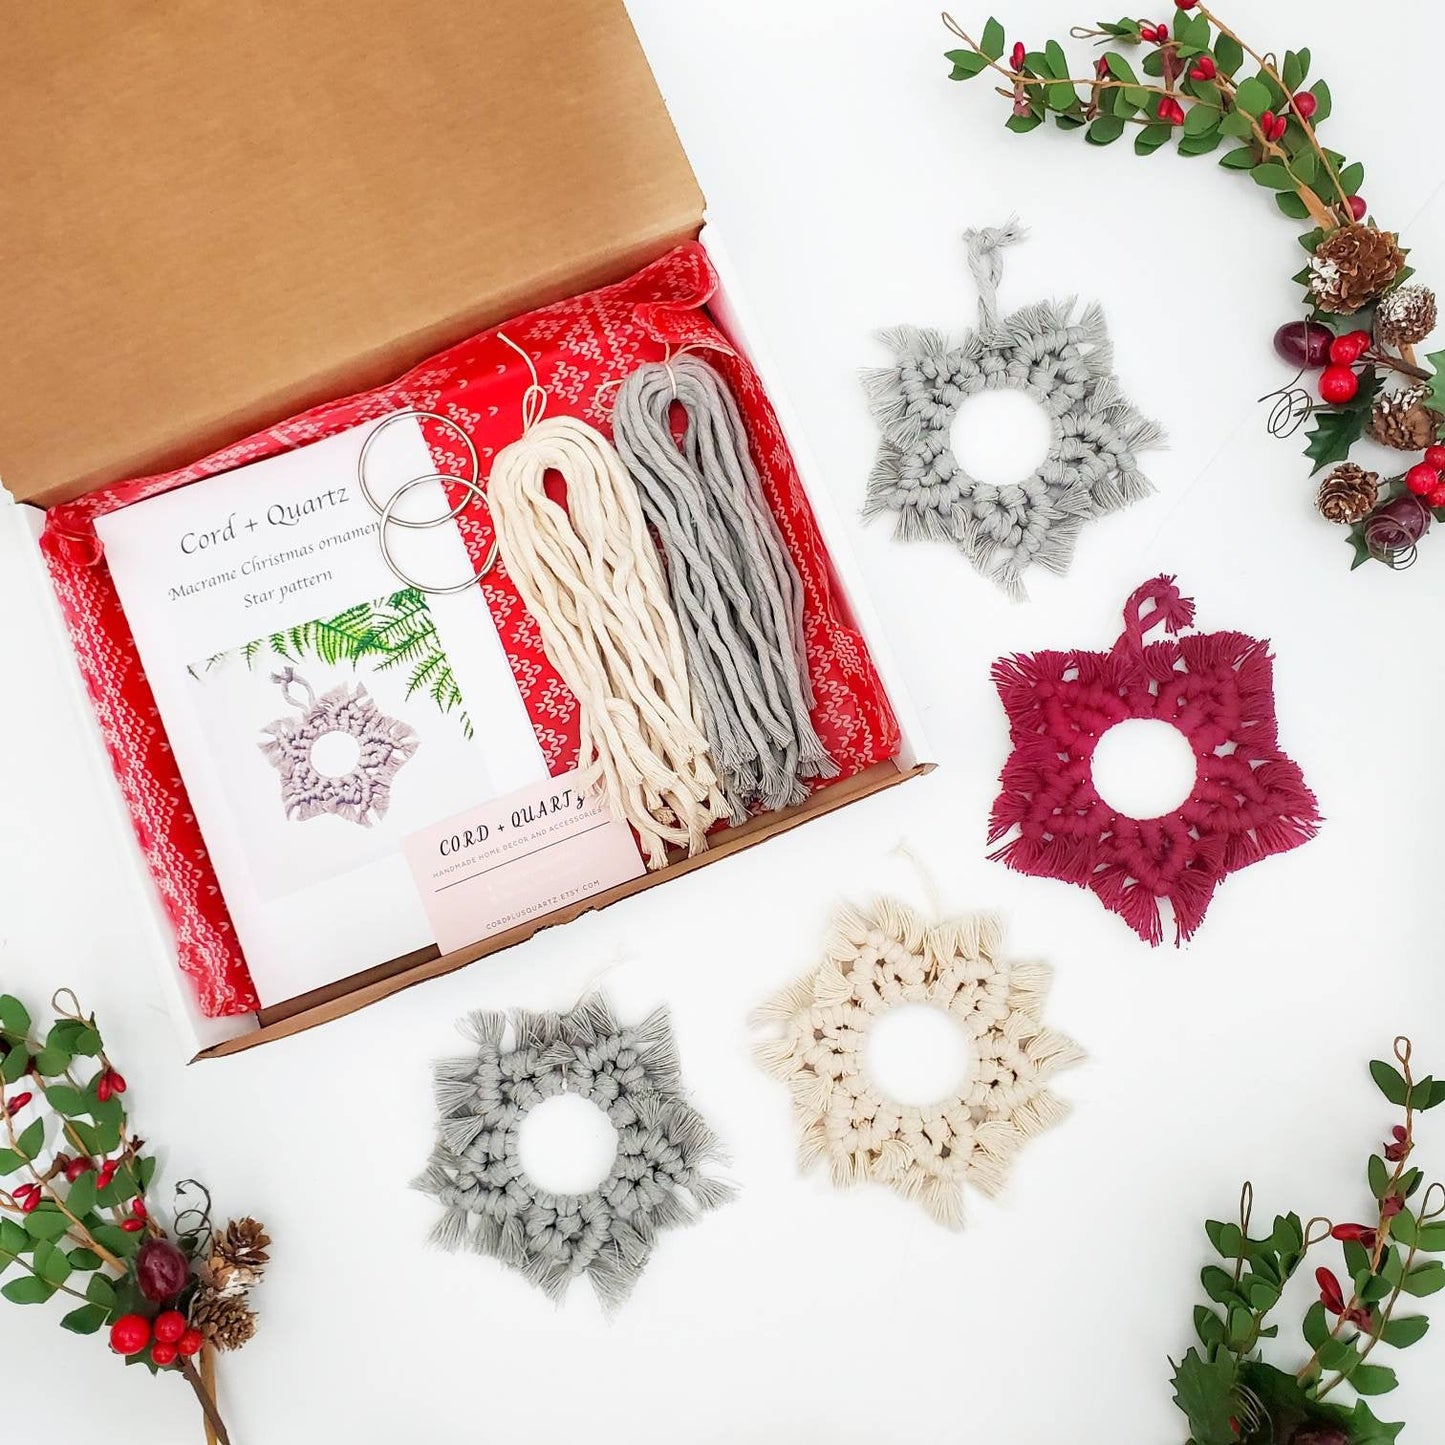 DIY Christmas ornament kit. Macrame christmas ornament set. Christmas craft kits for adults and kids. Macrame star. Christmas home decor diy